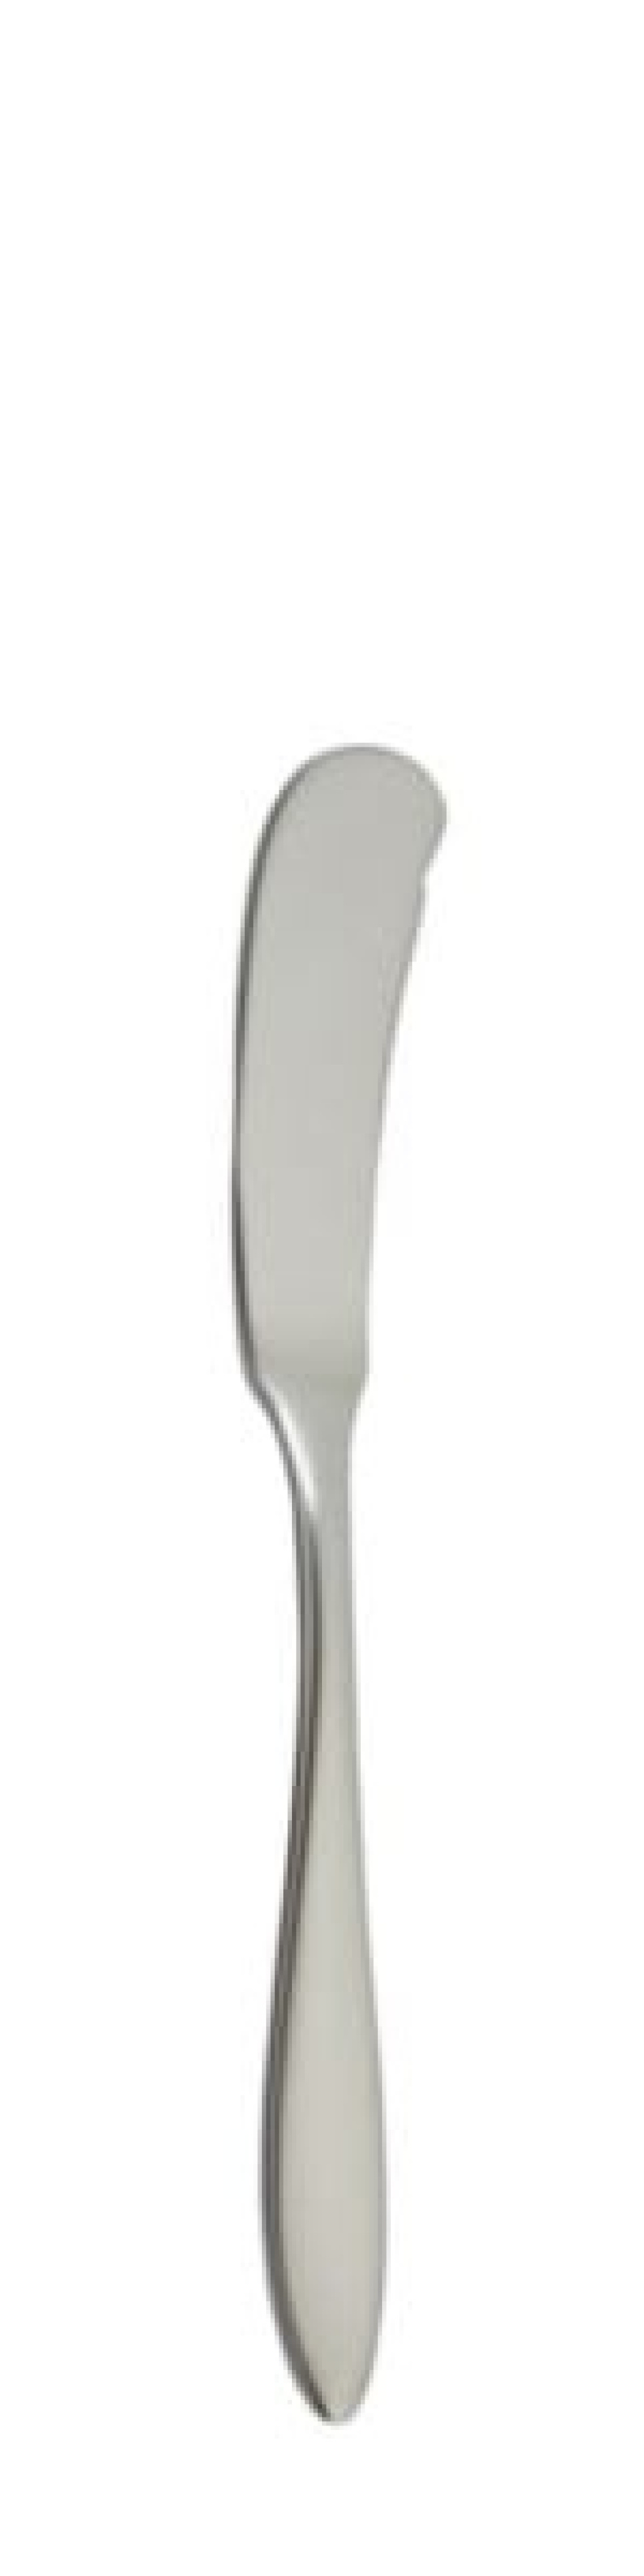 Terra Retro Smörkniv 170 mm - Solex i gruppen Dukning / Bestick / Smörknivar hos KitchenLab (1284-21657)